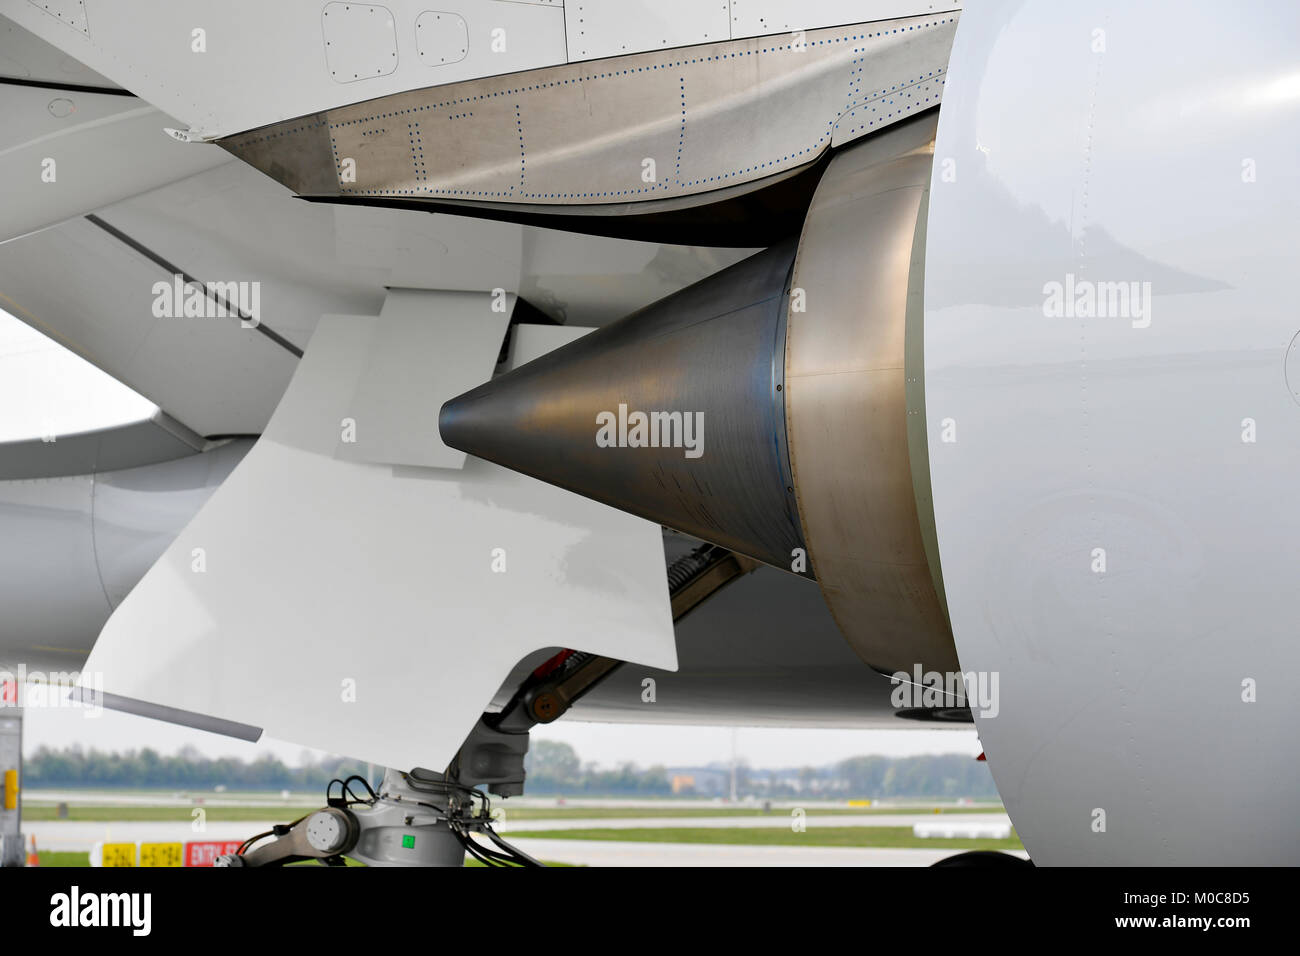 Lufthansa, Airbus , A350-900, A350, turbine, Turbine, wheel, air, aircraft, plane, airplane, Munich airport, Stock Photo